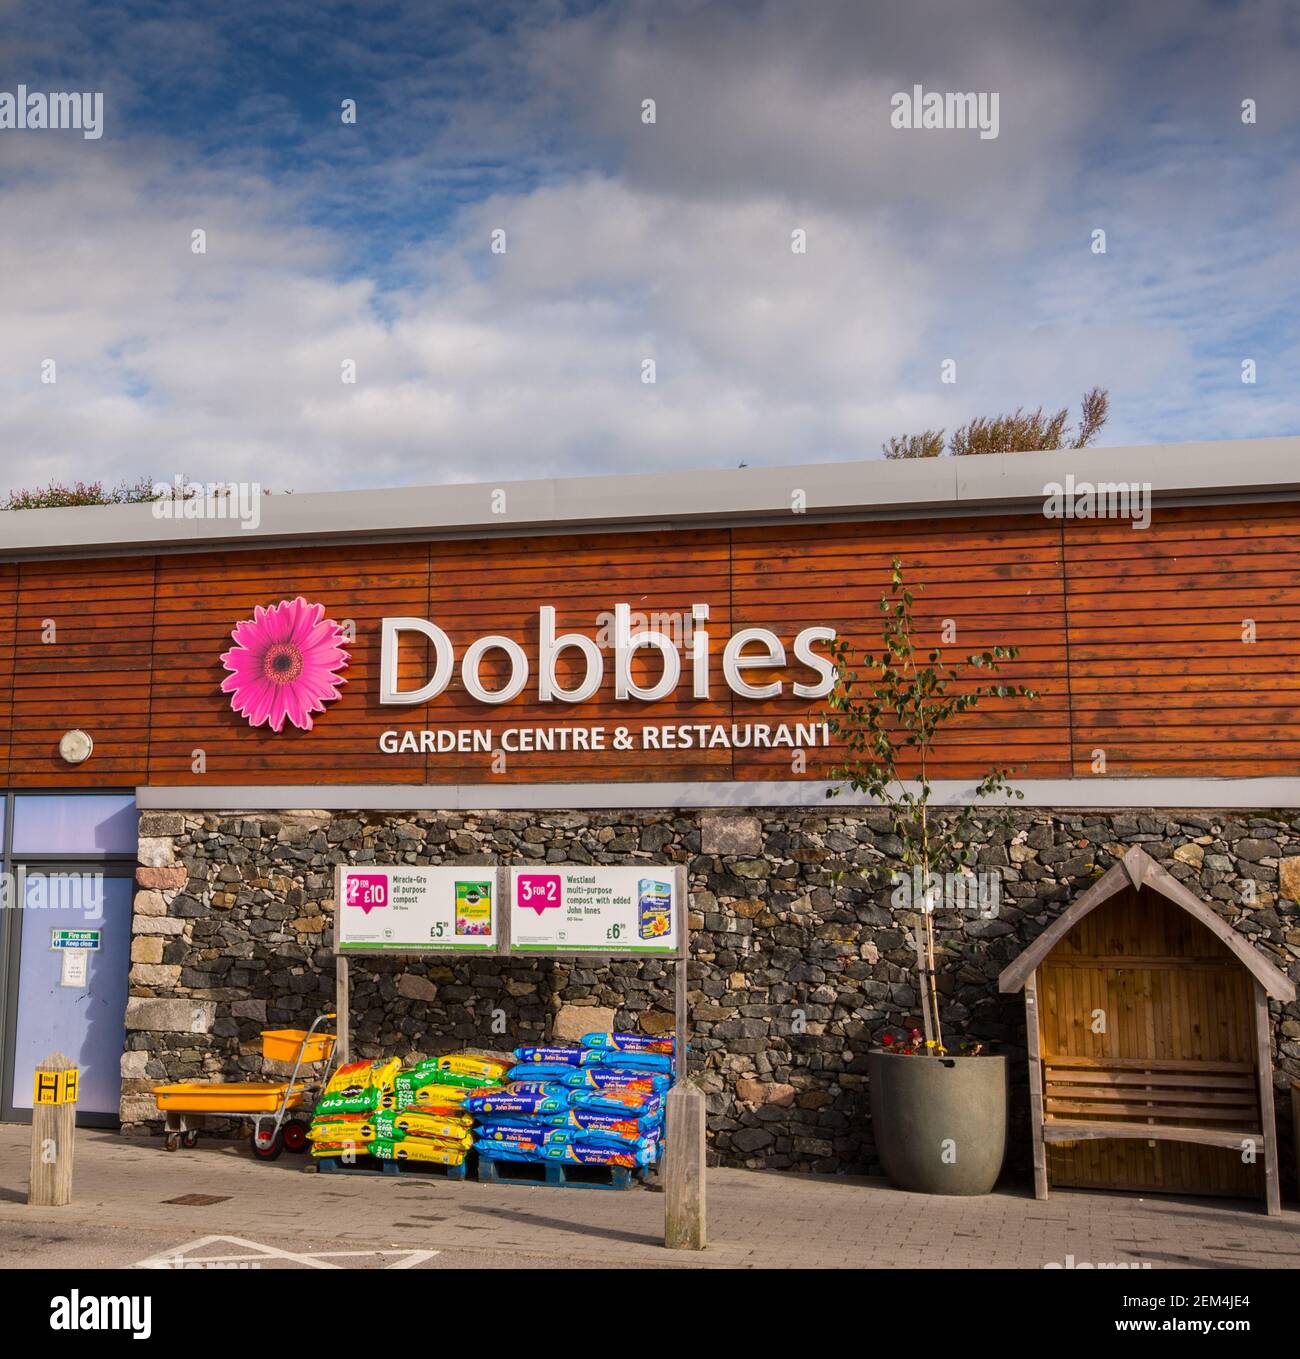 Dobbies garden centre in Aberdeen, scotland Stock Photo